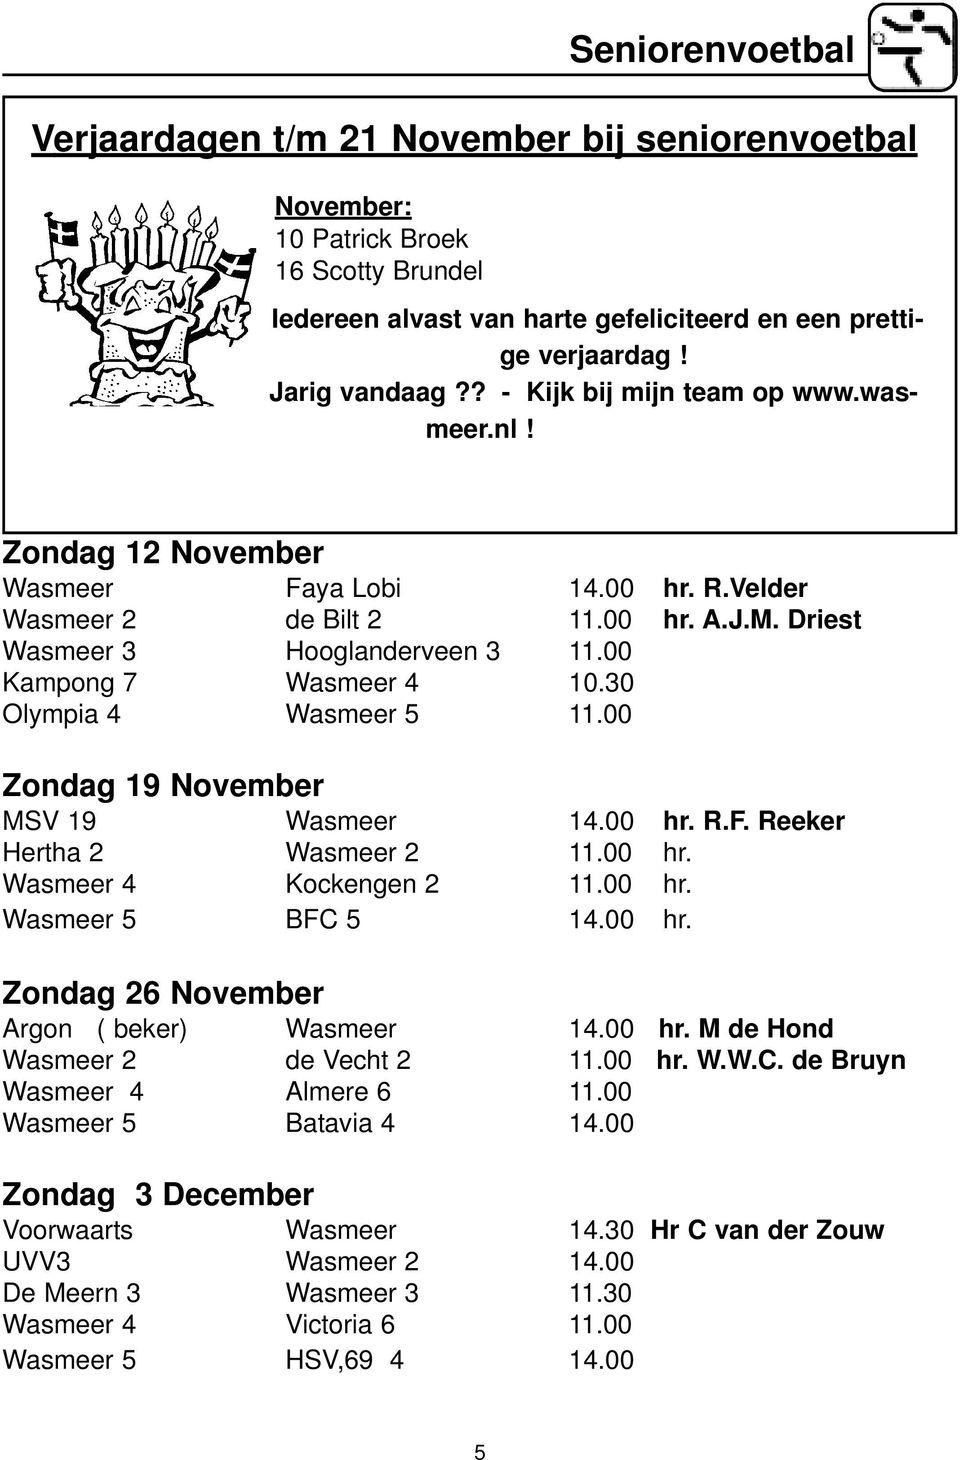 30 Olympia 4 Wasmeer 5 11.00 Zondag 19 November MSV 19 Wasmeer 14.00 hr. R.F. Reeker Hertha 2 Wasmeer 2 11.00 hr. Wasmeer 4 Kockengen 2 11.00 hr. Wasmeer 5 BFC 5 14.00 hr. Zondag 26 November Argon ( beker) Wasmeer 14.